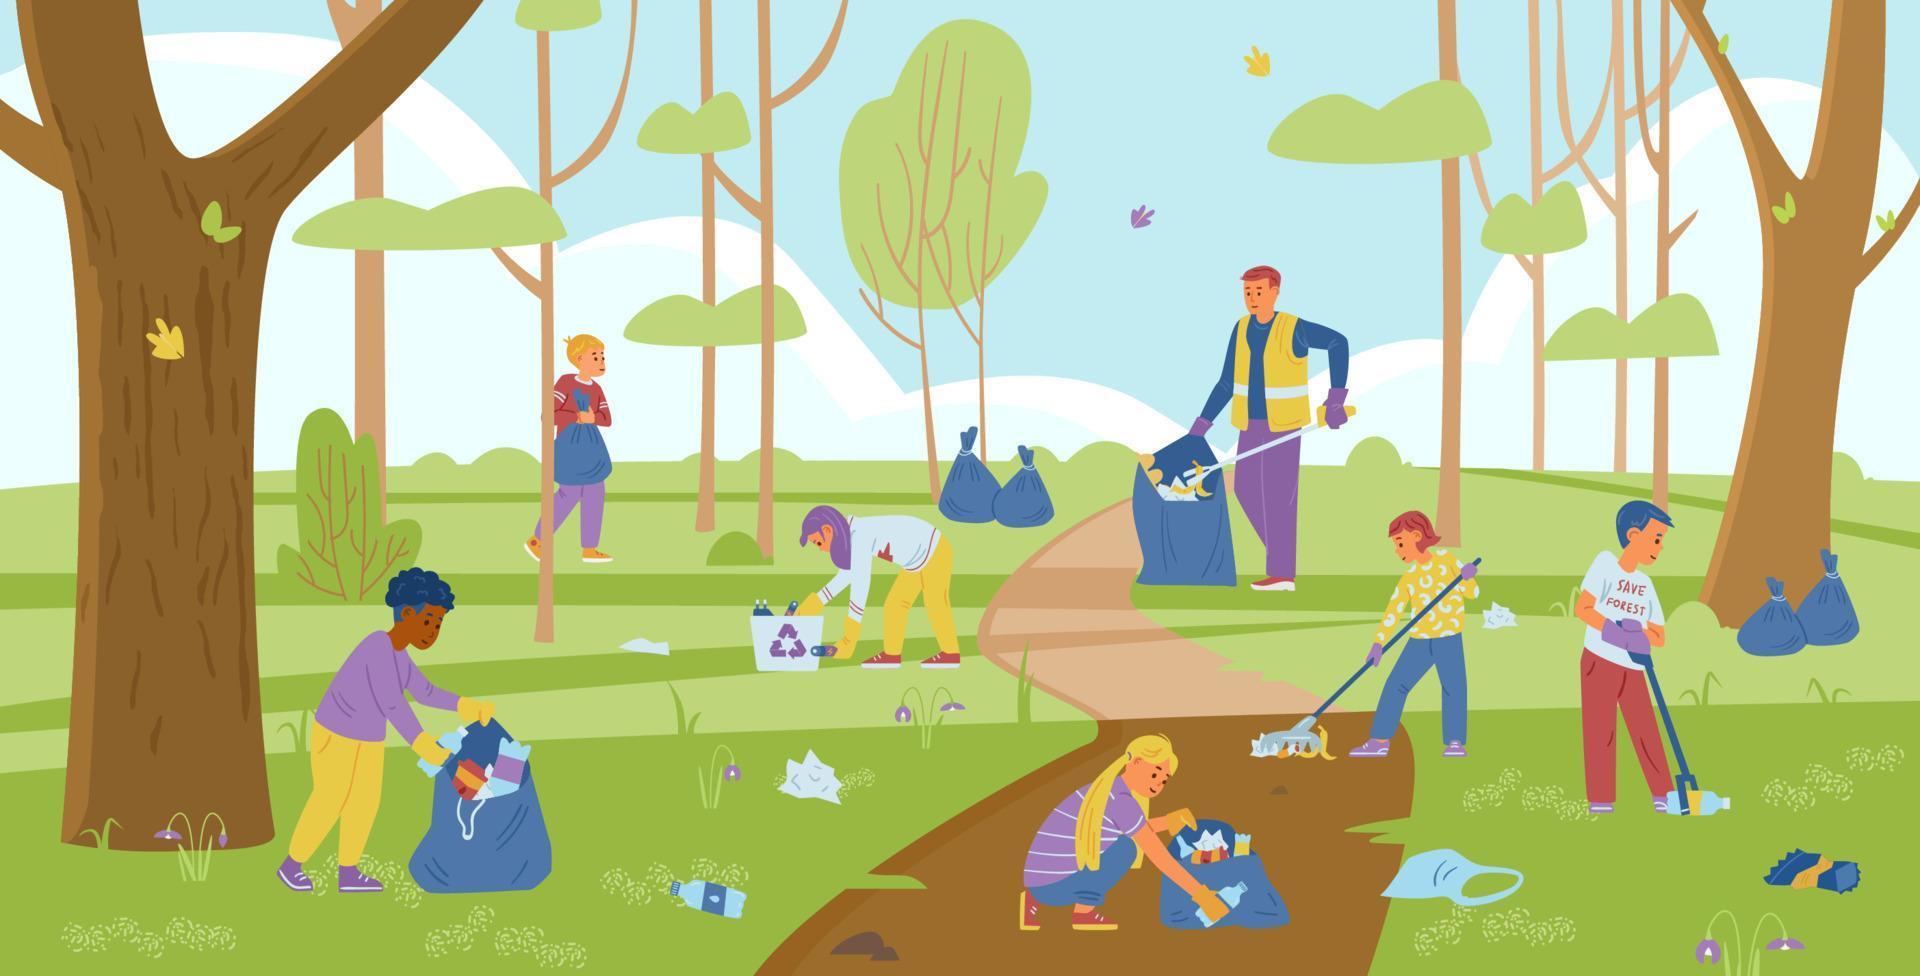 grupo de crianças voluntárias com um adulto coletando lixo na floresta. ilustração vetorial. vetor